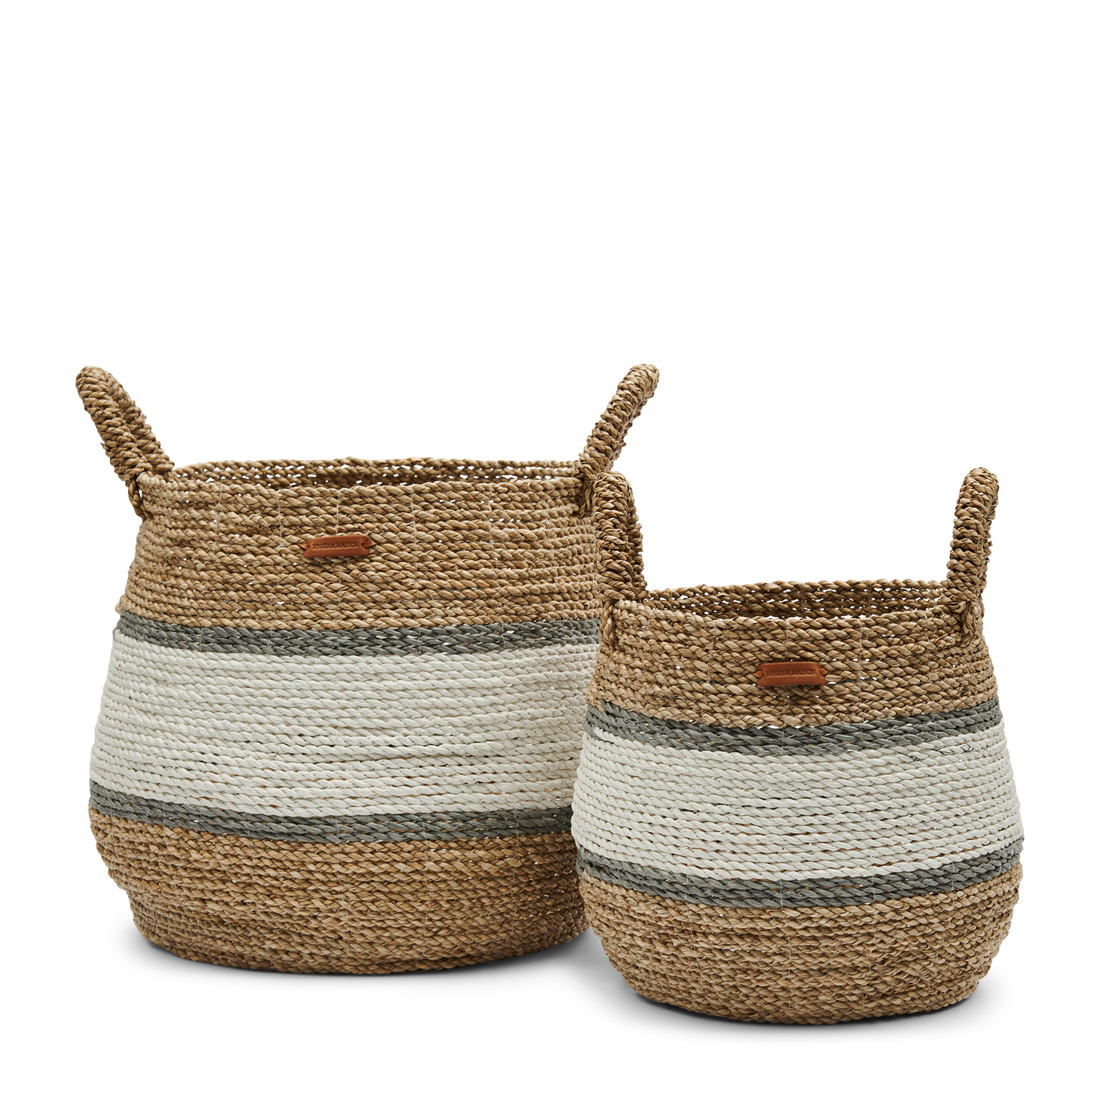 Ocean Breeze Basket Set of 2 pieces